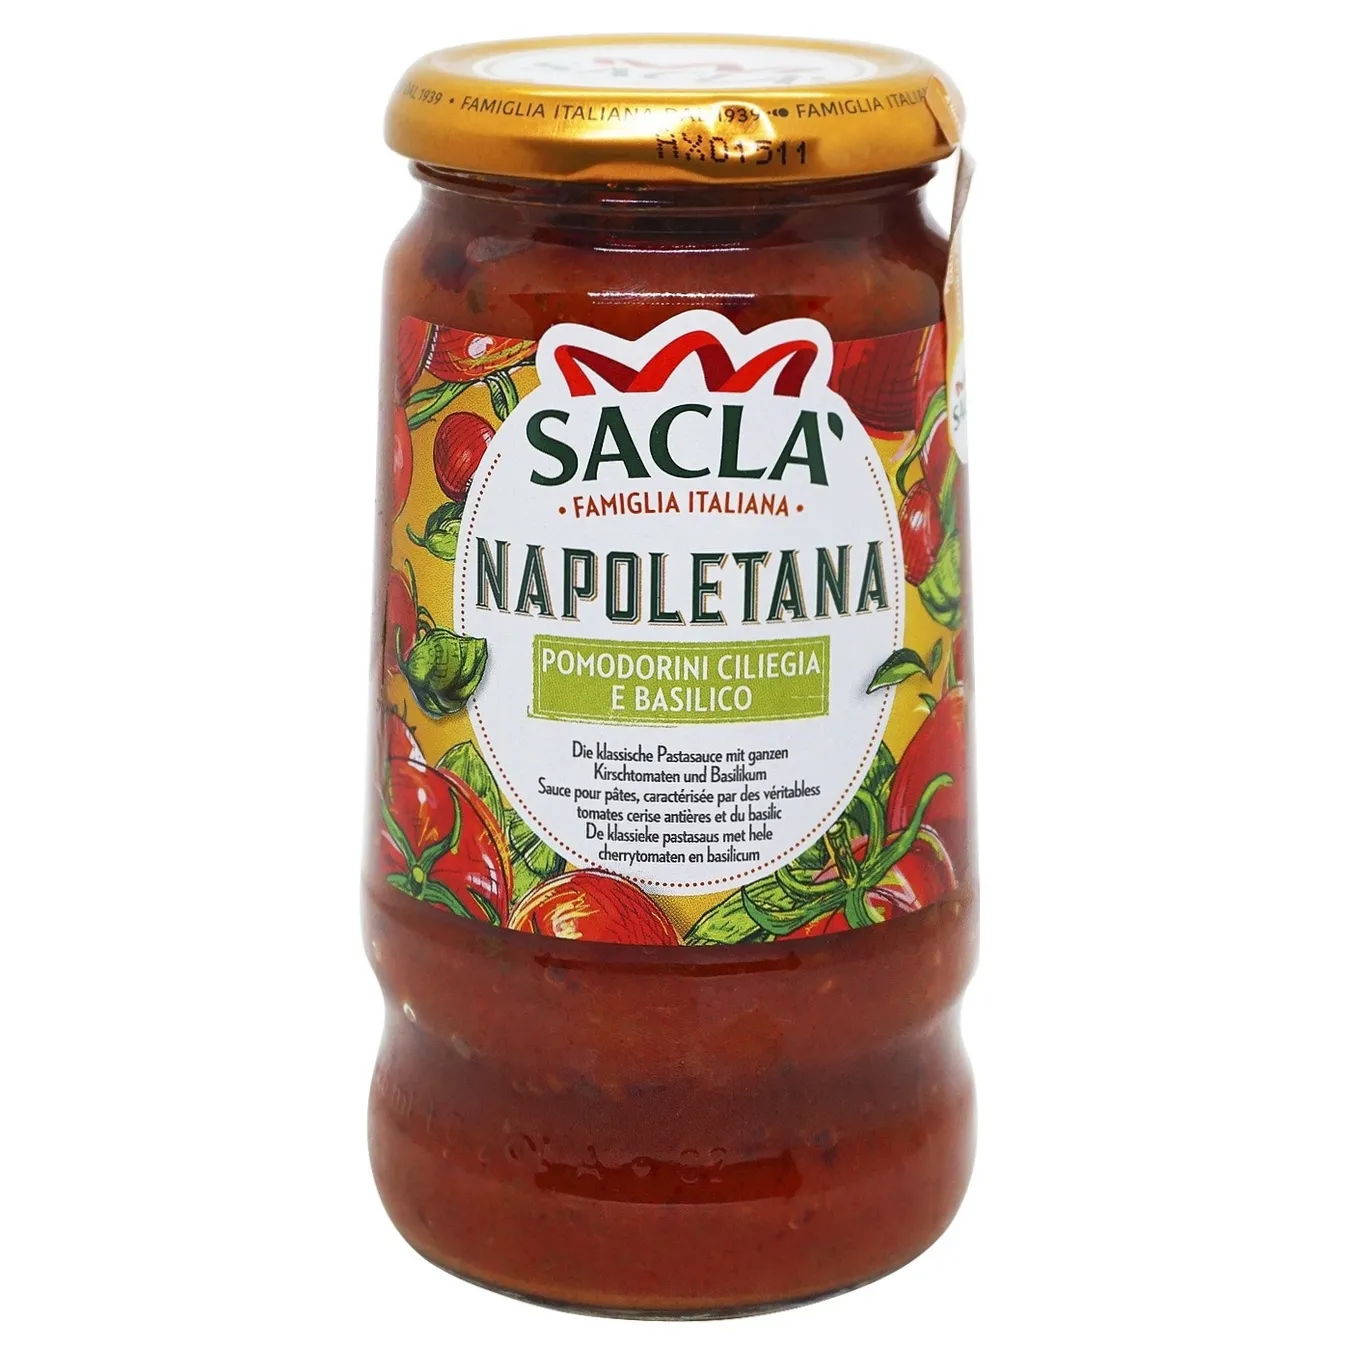 Sacla tomato and basil sauce 350g